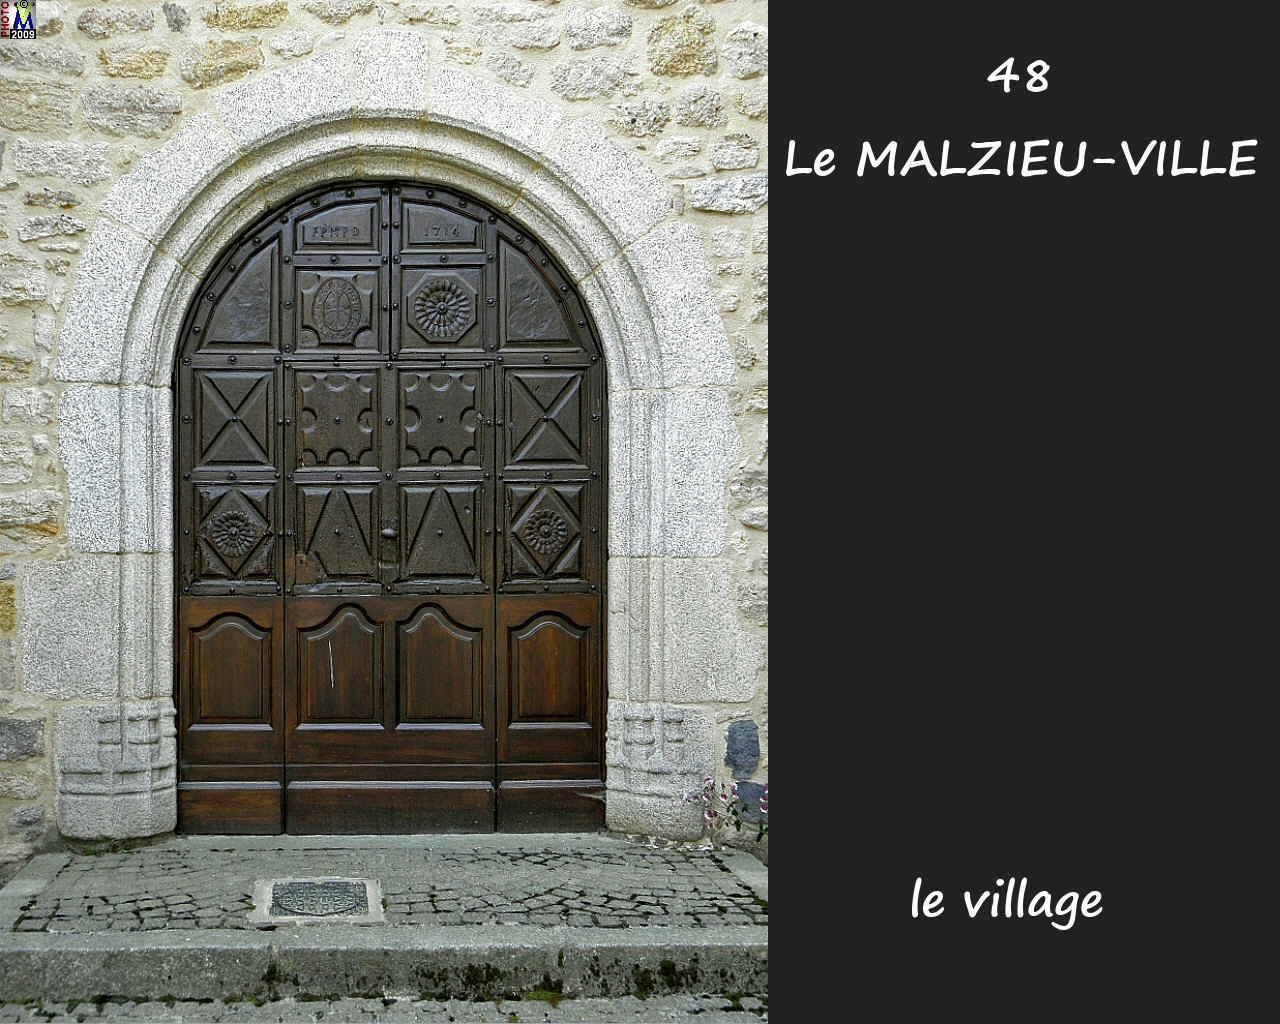 48MALZIEU-VILLE_village_216.jpg